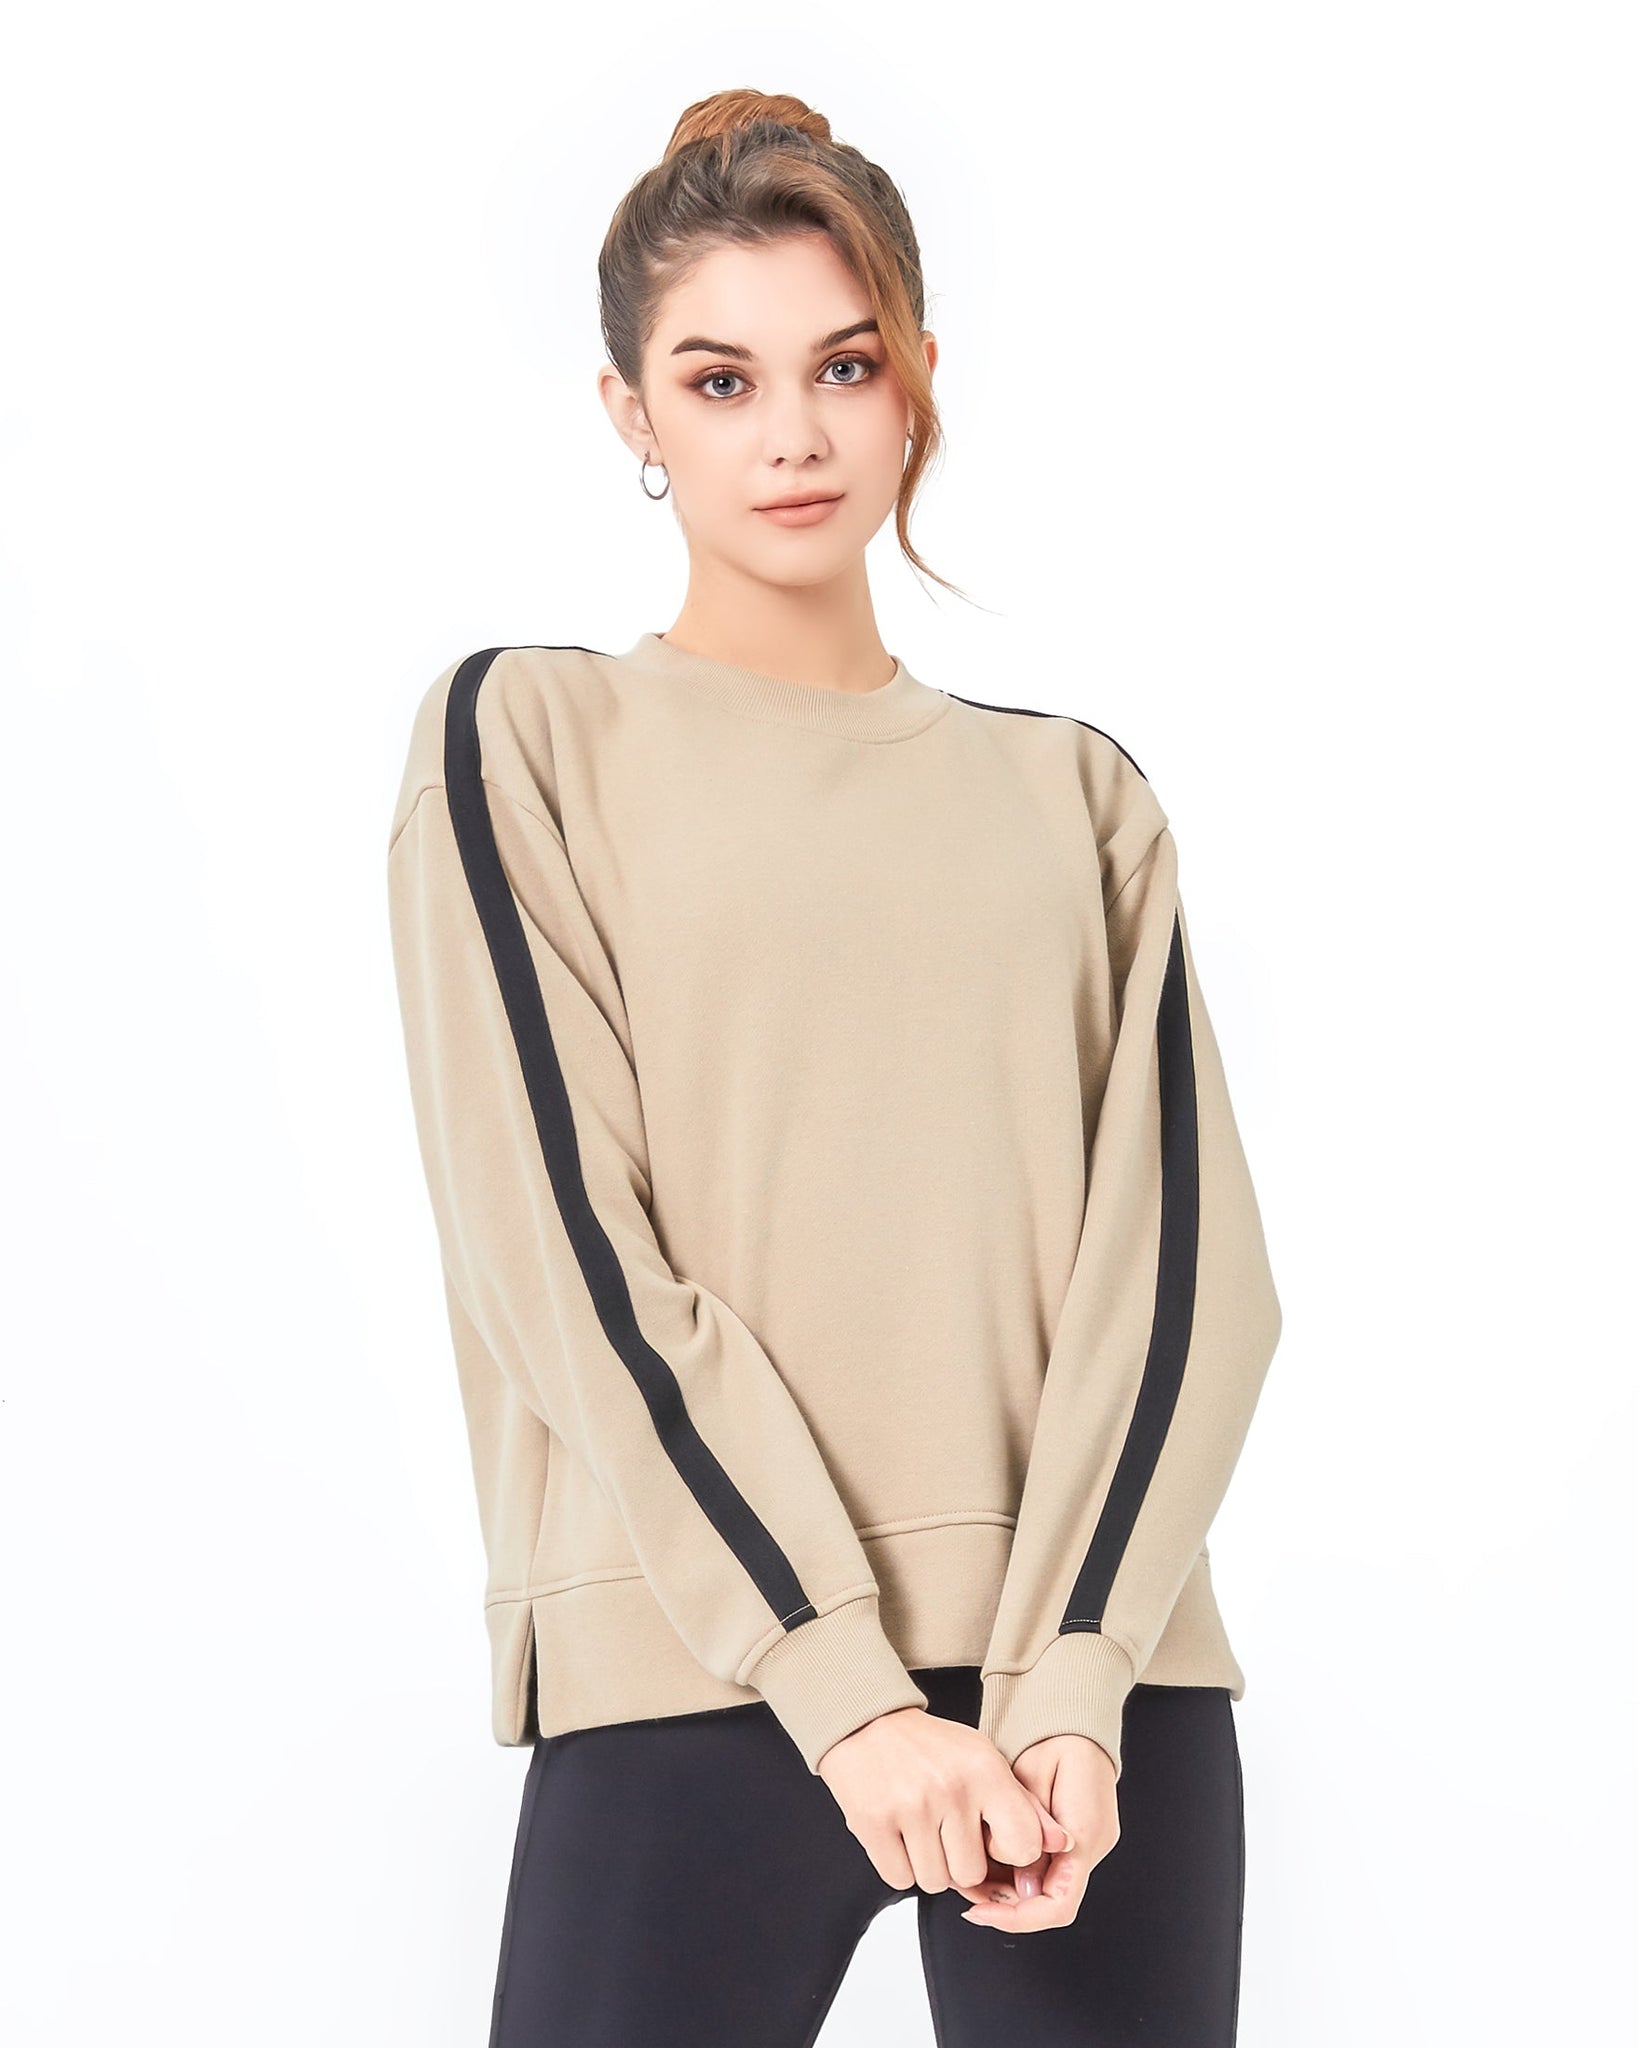 Sideline Fleece Sweatshirt-1